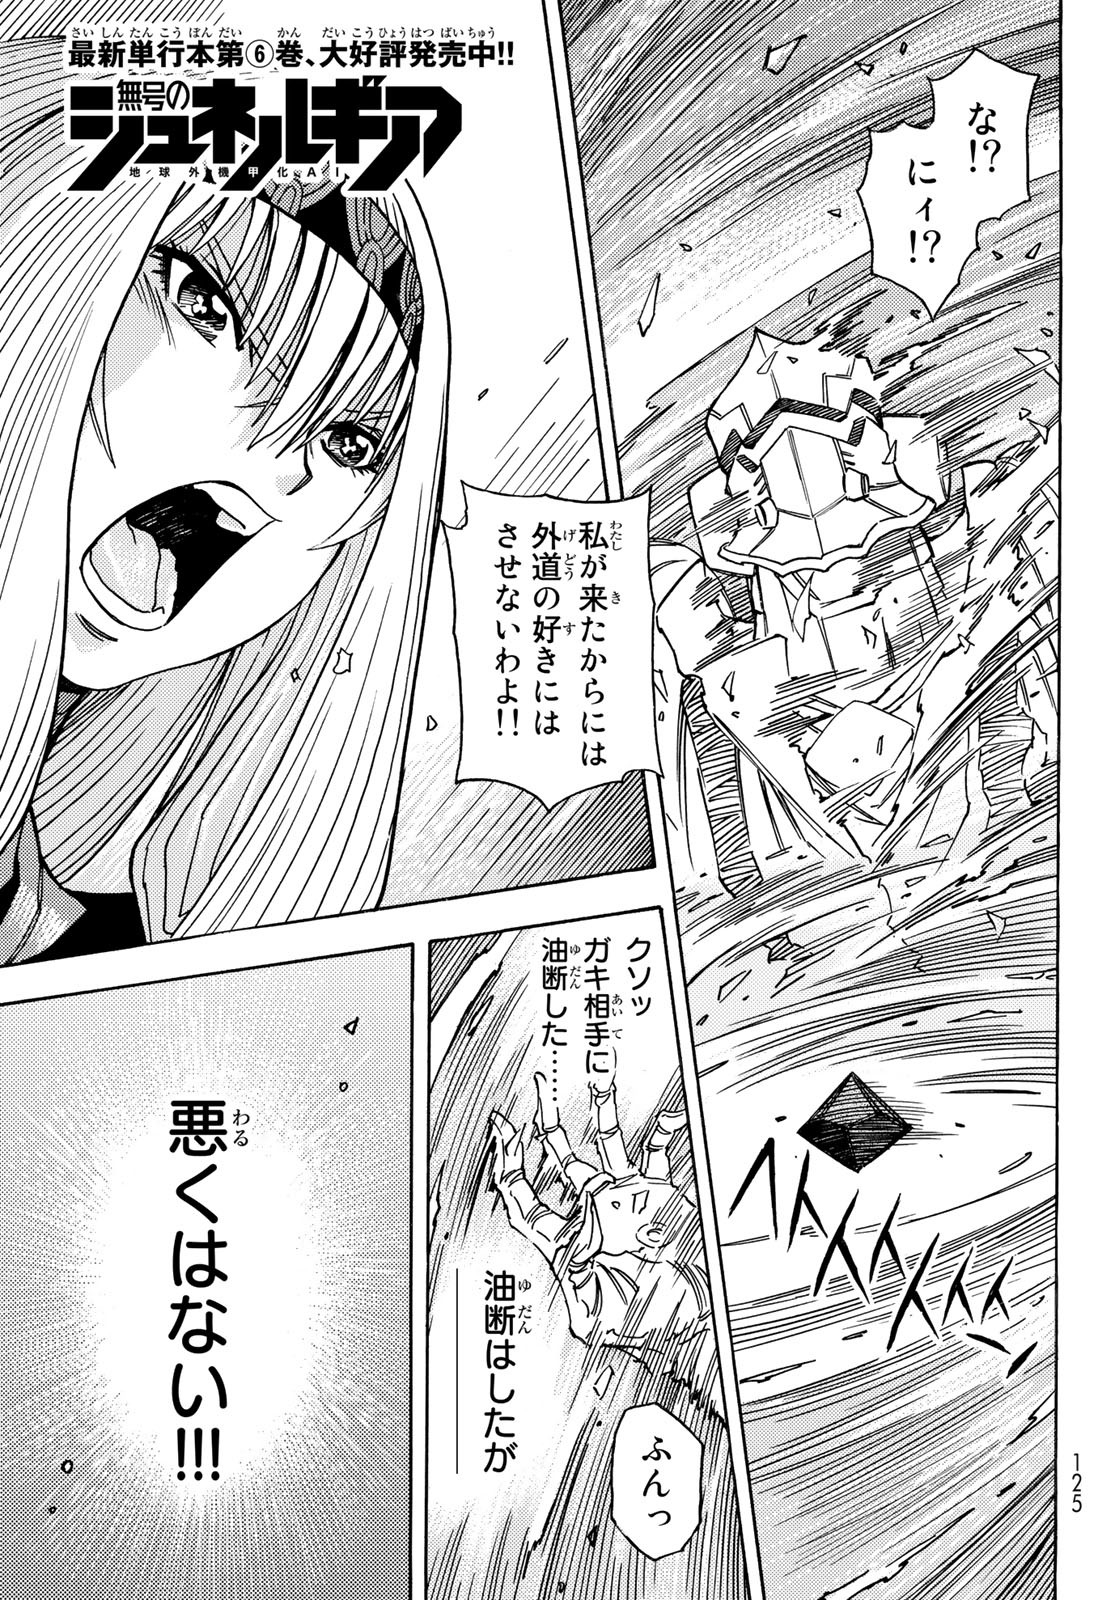 Mugou no Schnell Gear: Chikyuugai Kisouka AI - Chapter 40 - Page 1